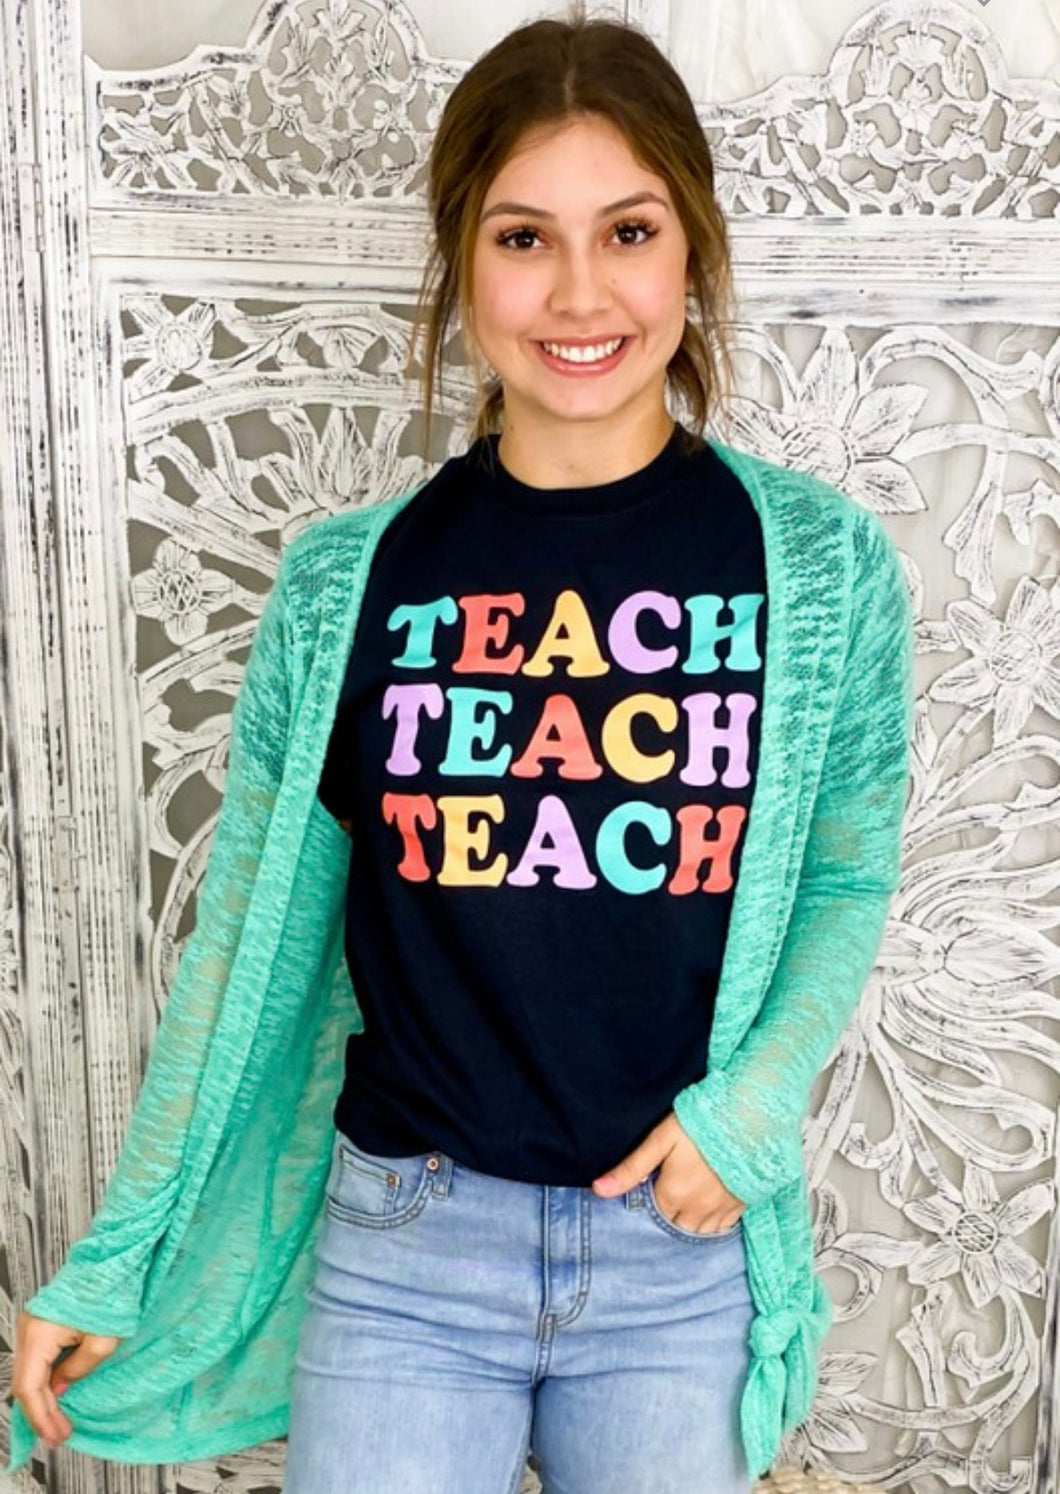 Teach teach teach